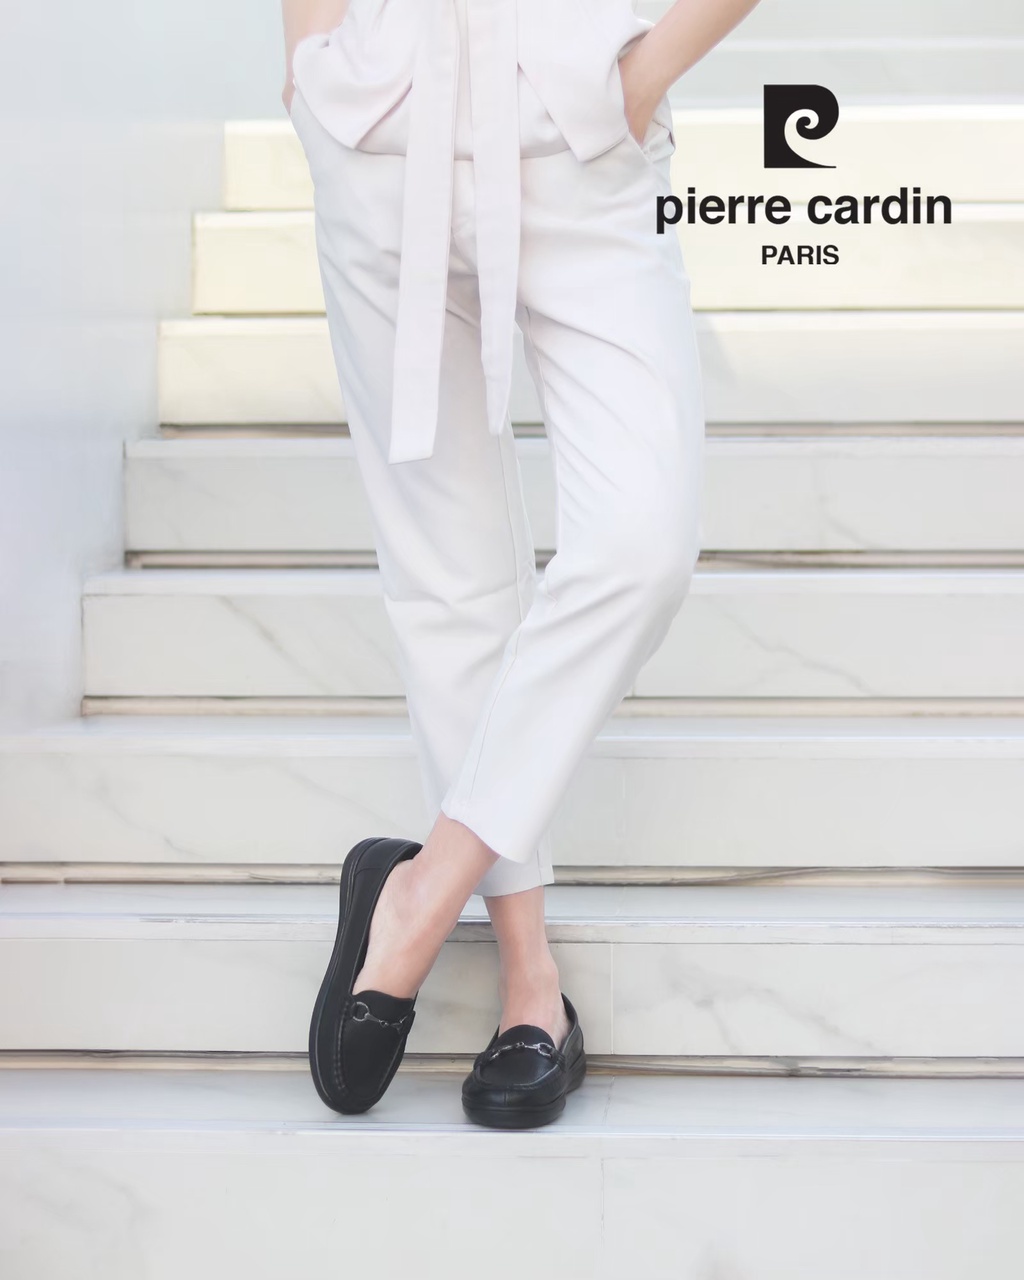 รูปภาพรายละเอียดของ Pierre Cardin รองเท้าผู้หญิง รองเท้าส้นแบน รองเท้าอ็อกซ์ฟอร์ดและรองเท้าพันข้อ นุ่มสบาย ผลิตจากหนังแท้ สีดำ รุ่น 59AC103